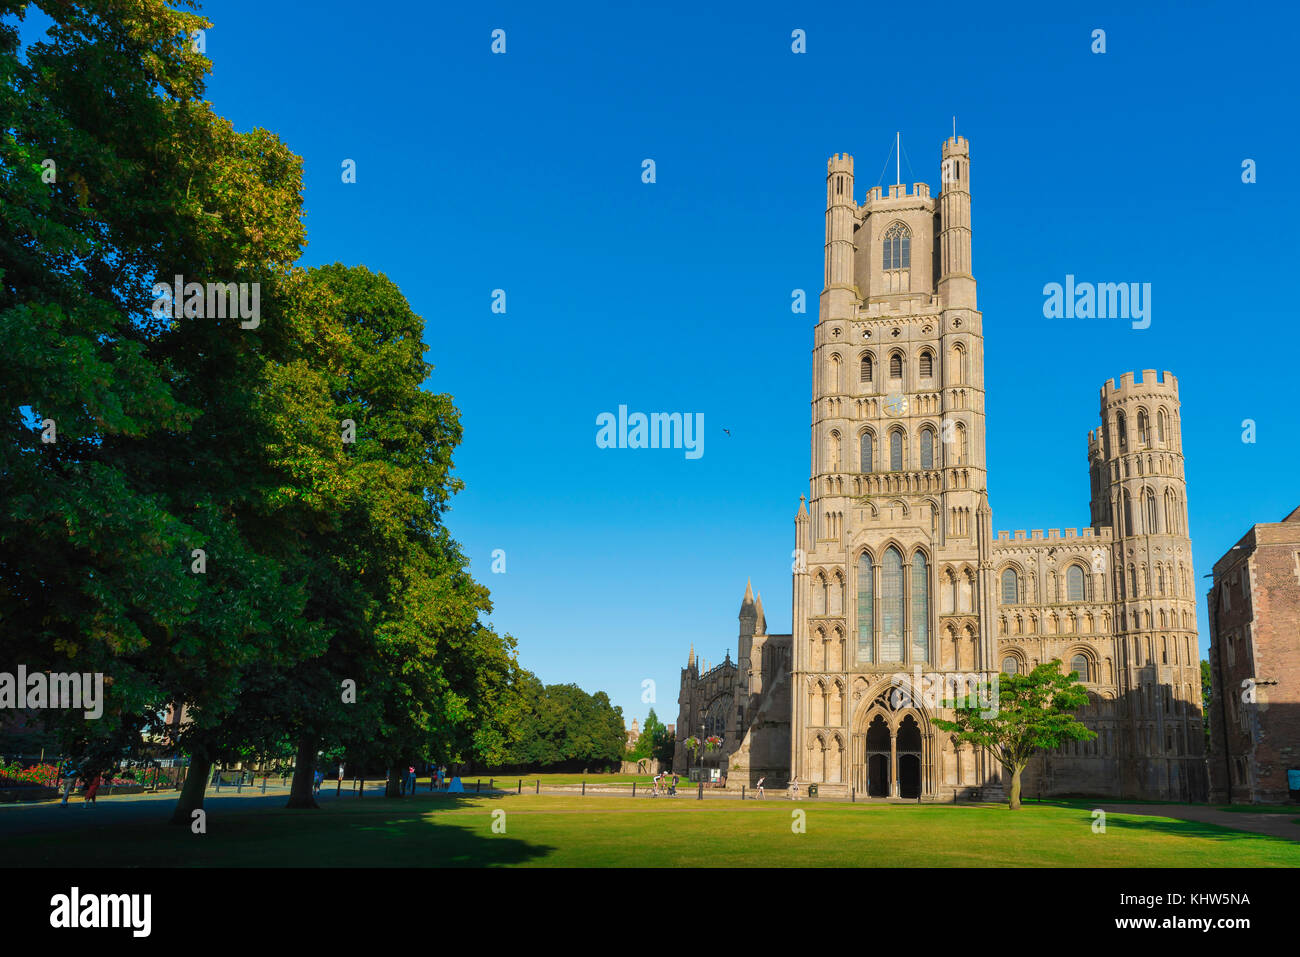 La ciudad de la catedral del Reino Unido, el verde de la catedral - conocido como el verde del palacio - y la torre oeste de la catedral en Ely, Cambridgeshire, Reino Unido. Foto de stock